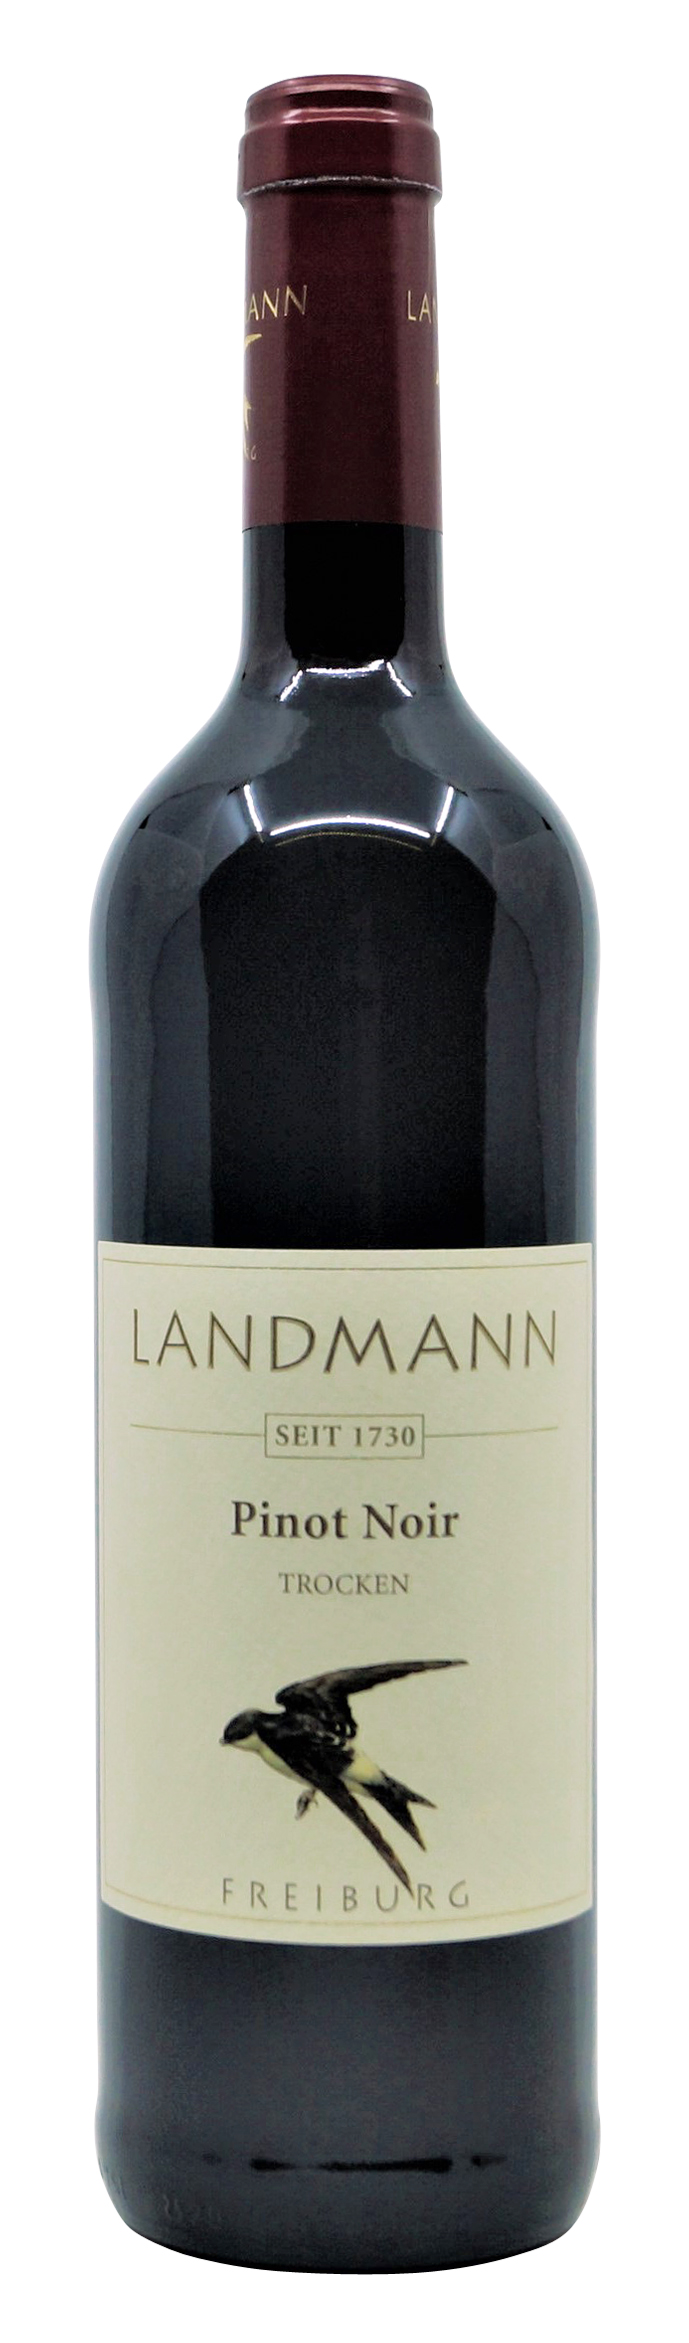 2018er Pinot Noir trocken vom Weingut Landmann aus Waltershofen, 0,75 l Flasche (  13,20 €/ Liter)